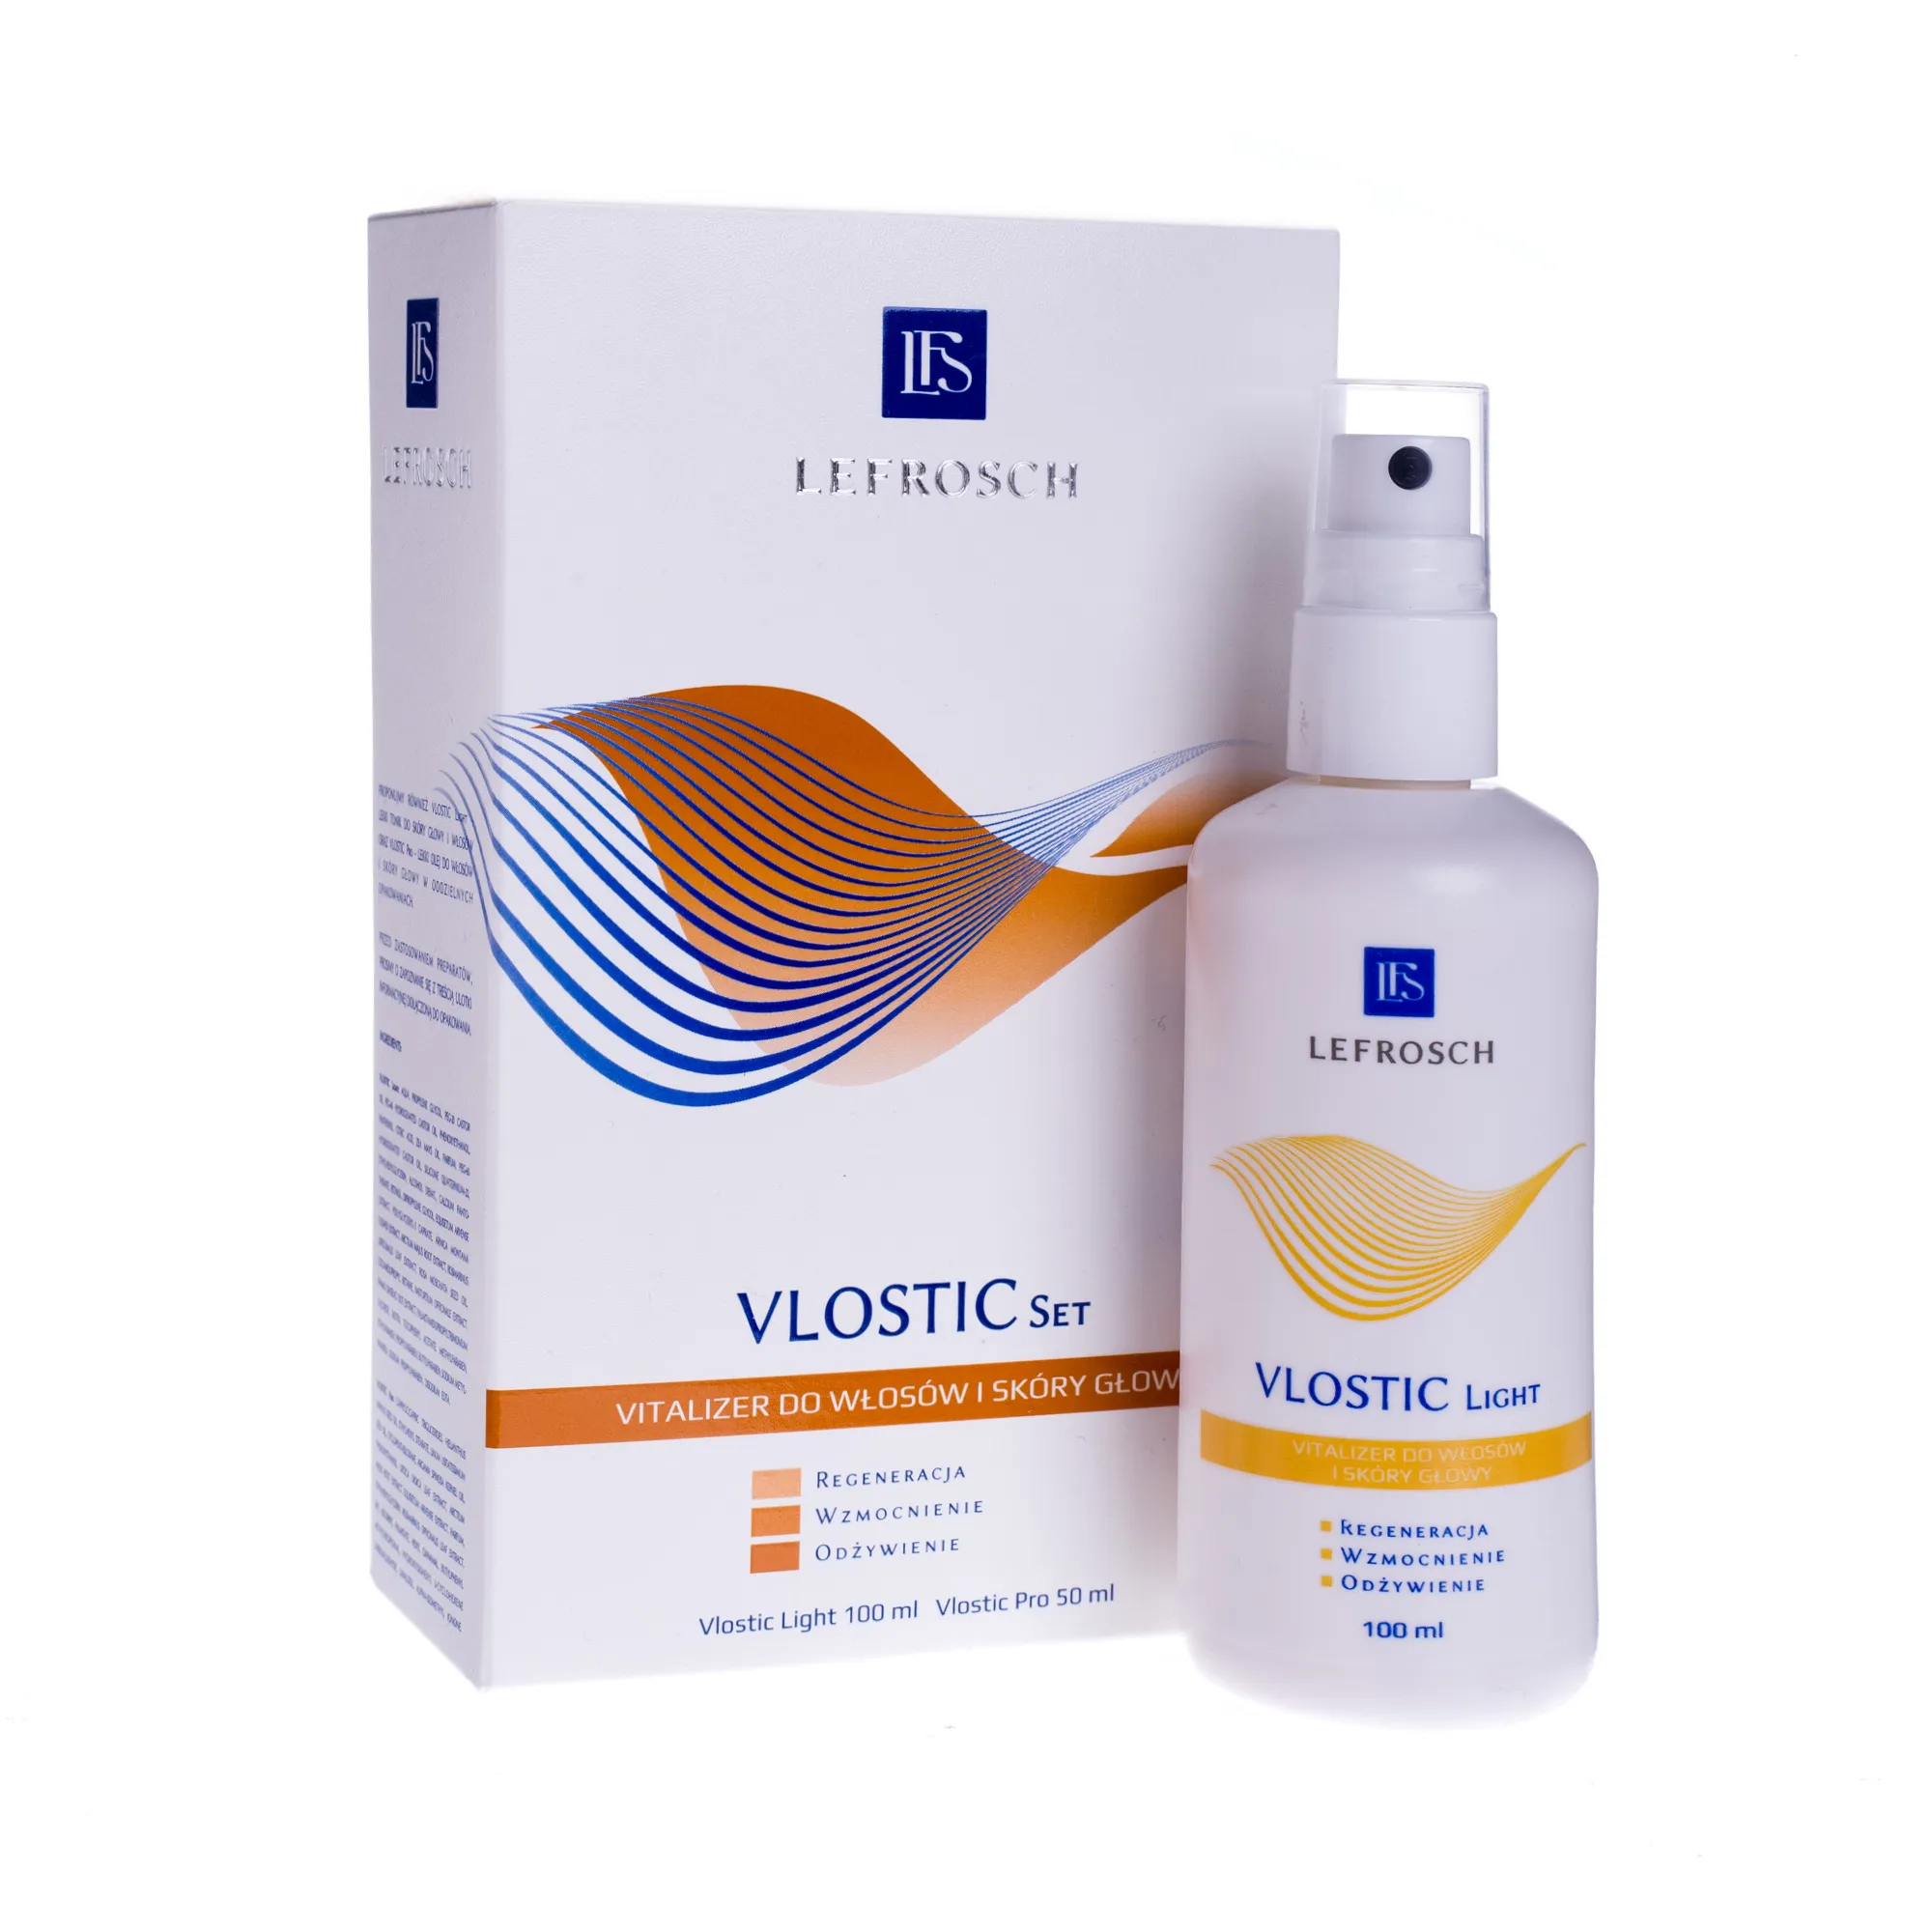 Lefrosch Vlostic Set, płyn vitalizer do włosów i skóry głowy, 100 ml + 50 ml